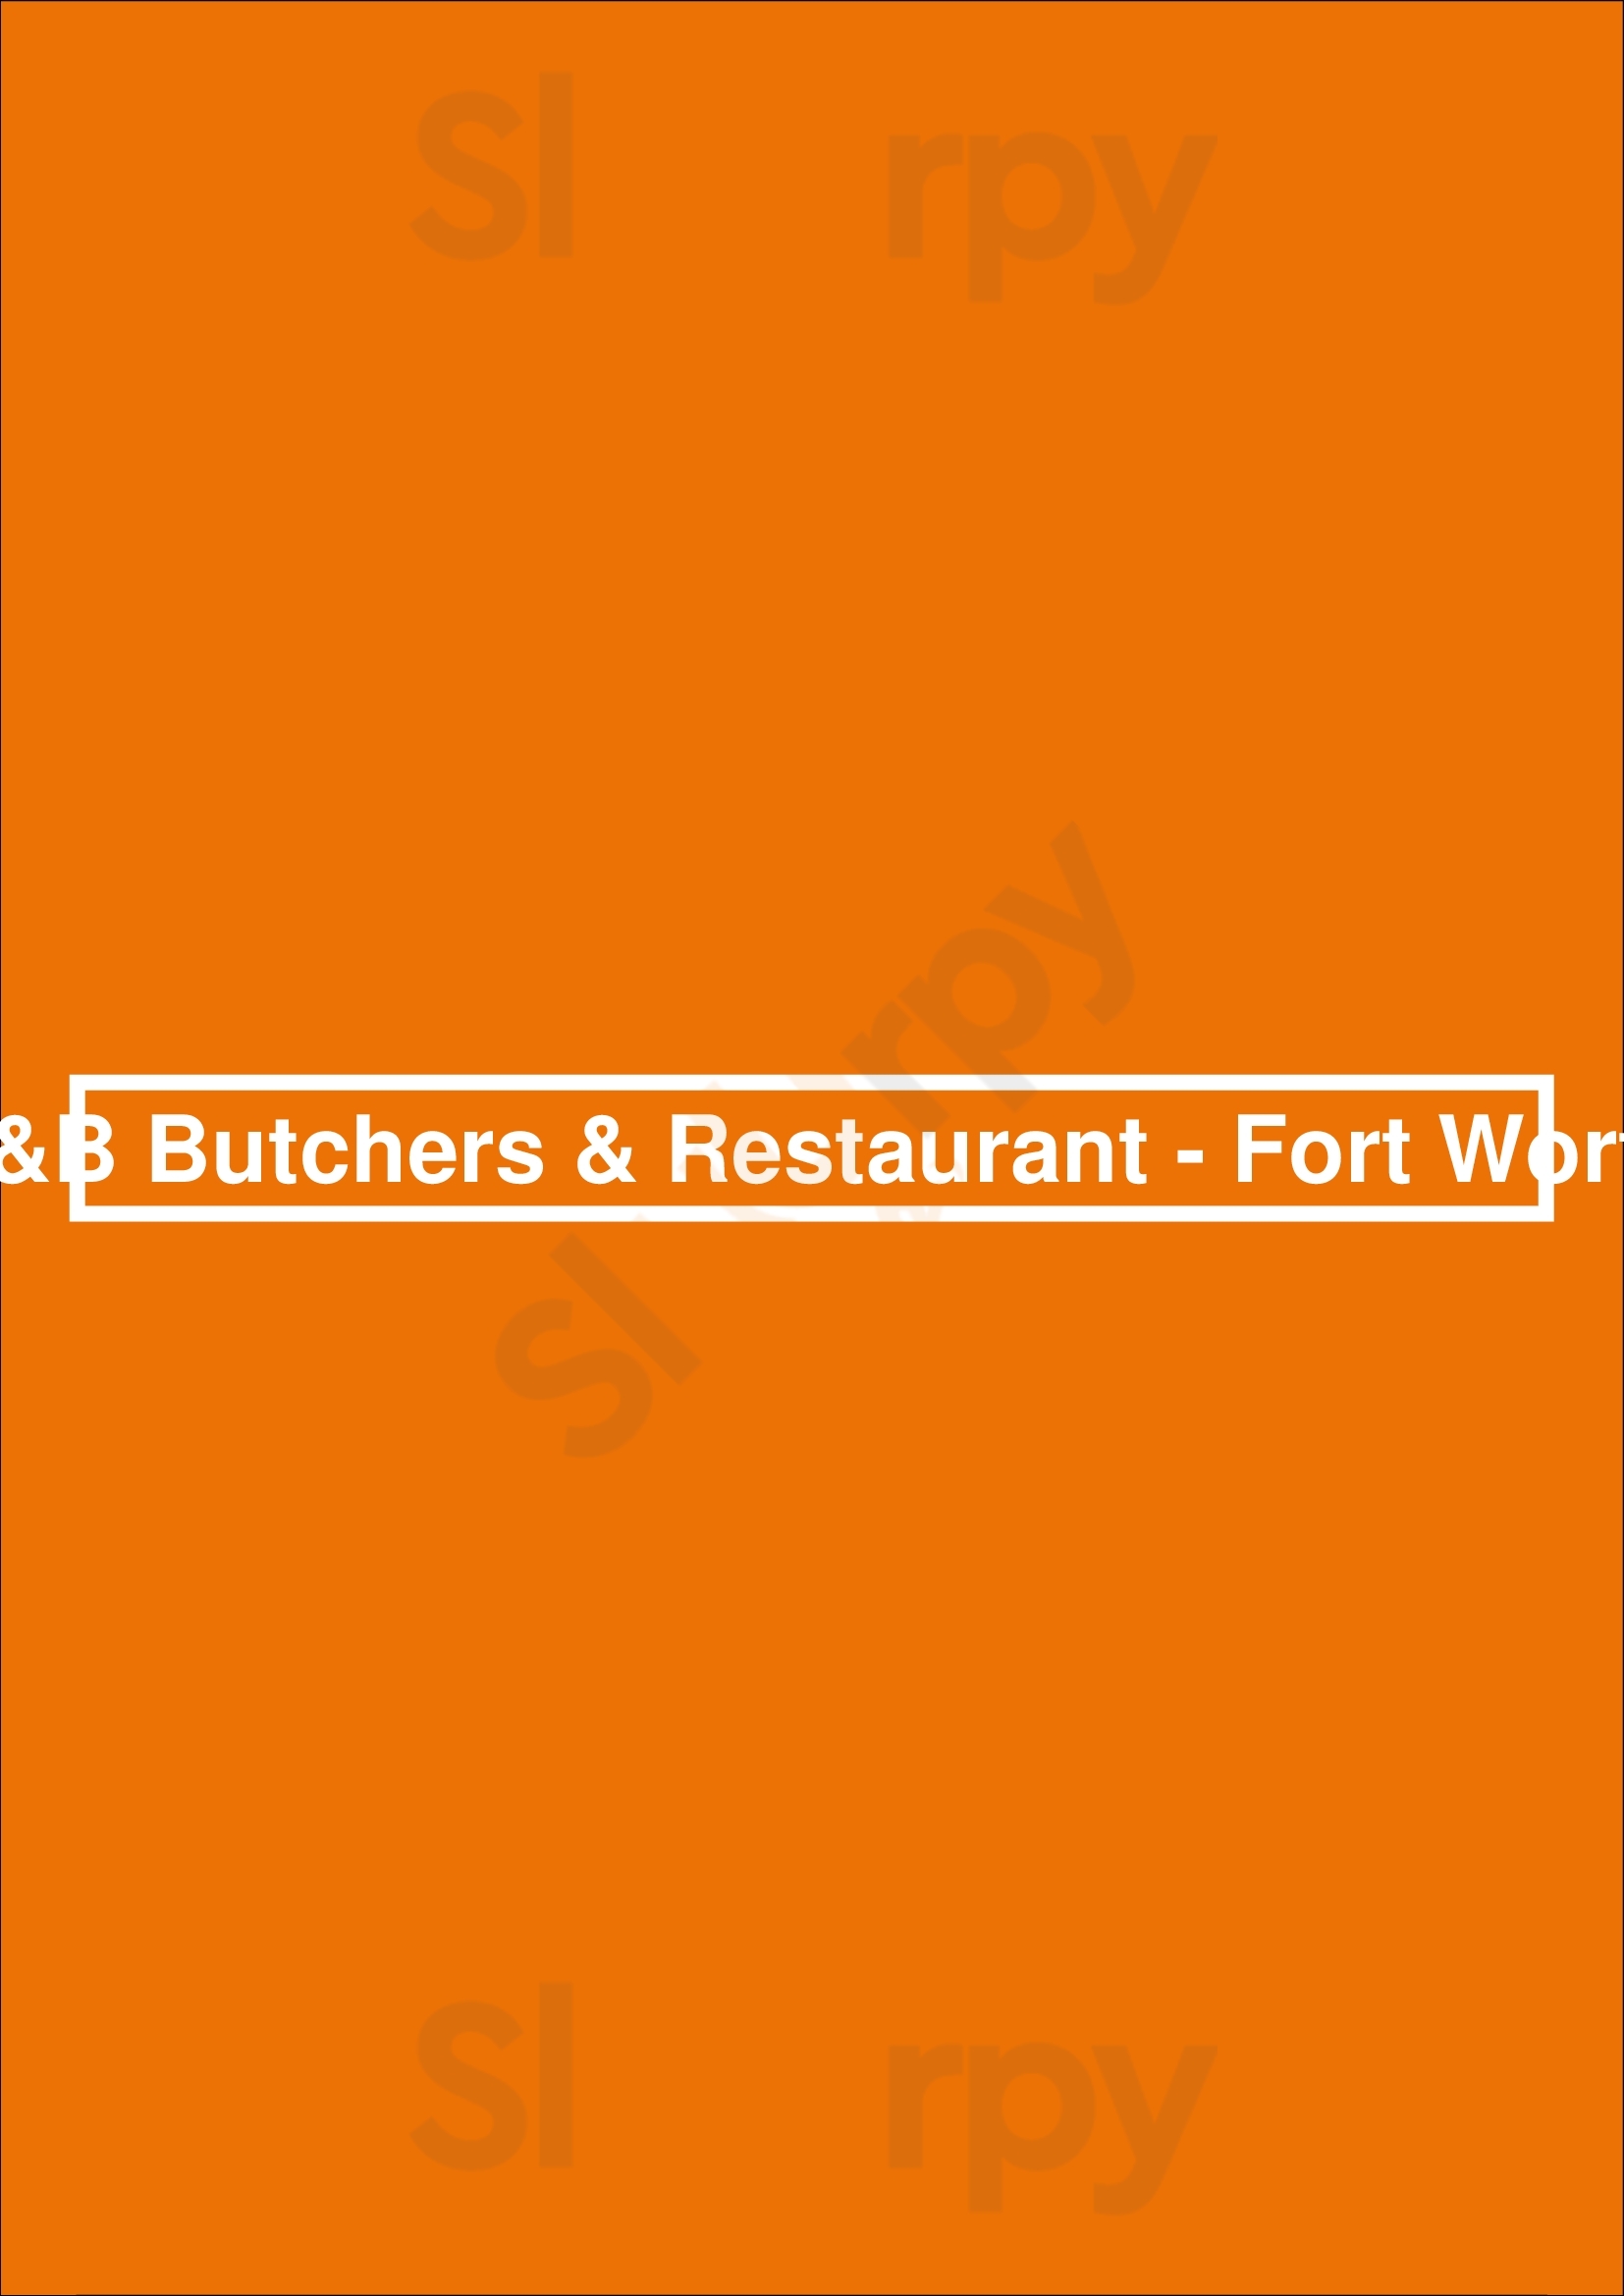 B&b Butchers & Restaurant - Fort Worth Fort Worth Menu - 1